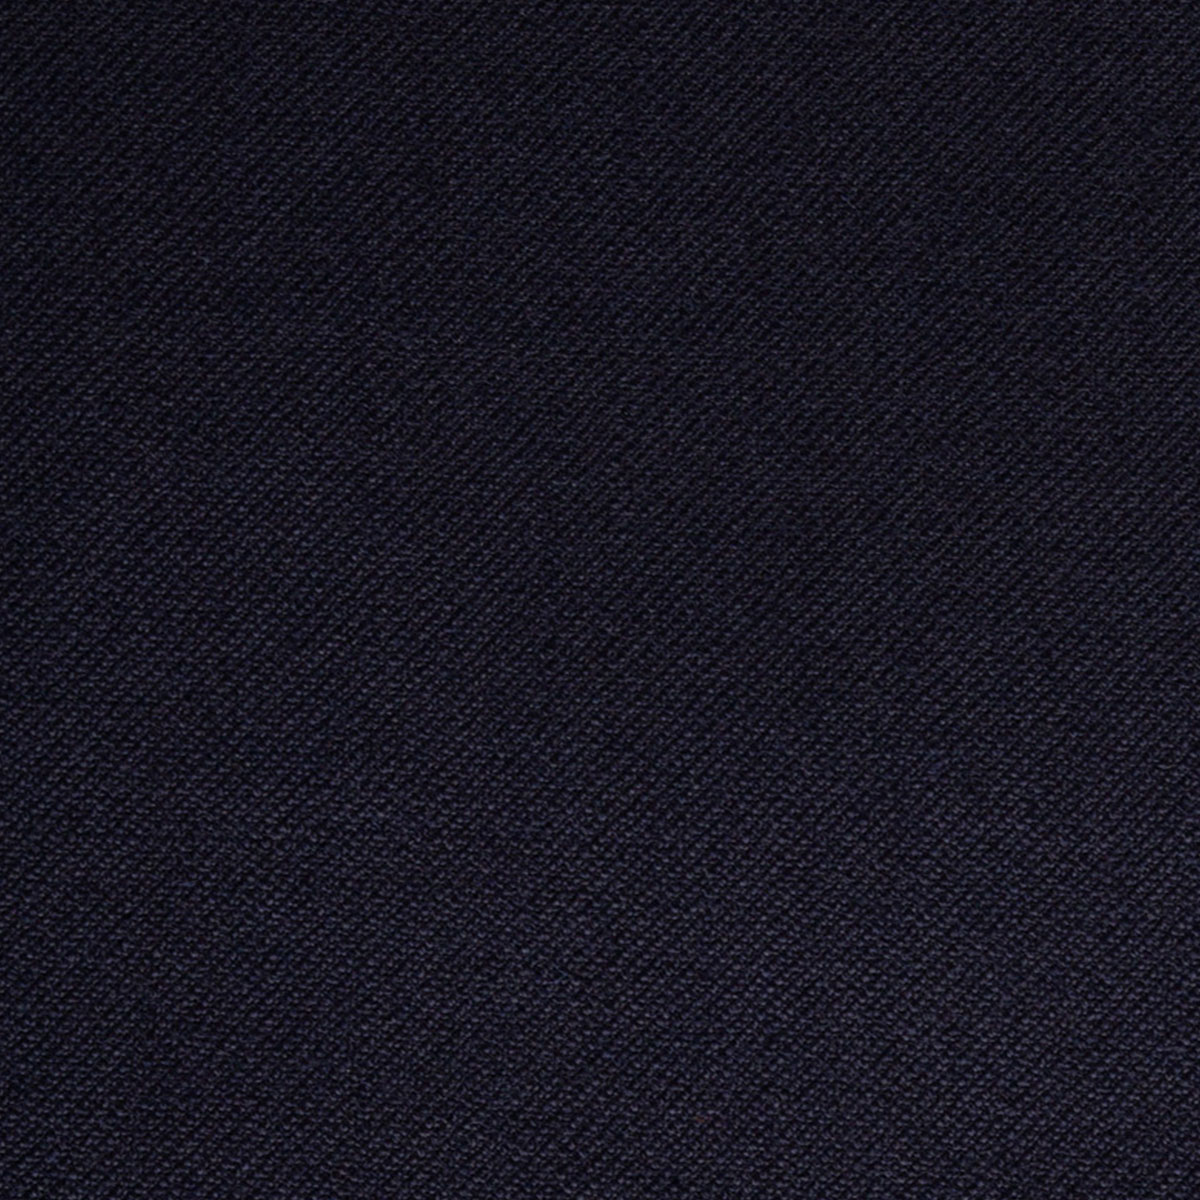 Detailansicht des dunkelblauen Oberstoffs aus reiner Wolle